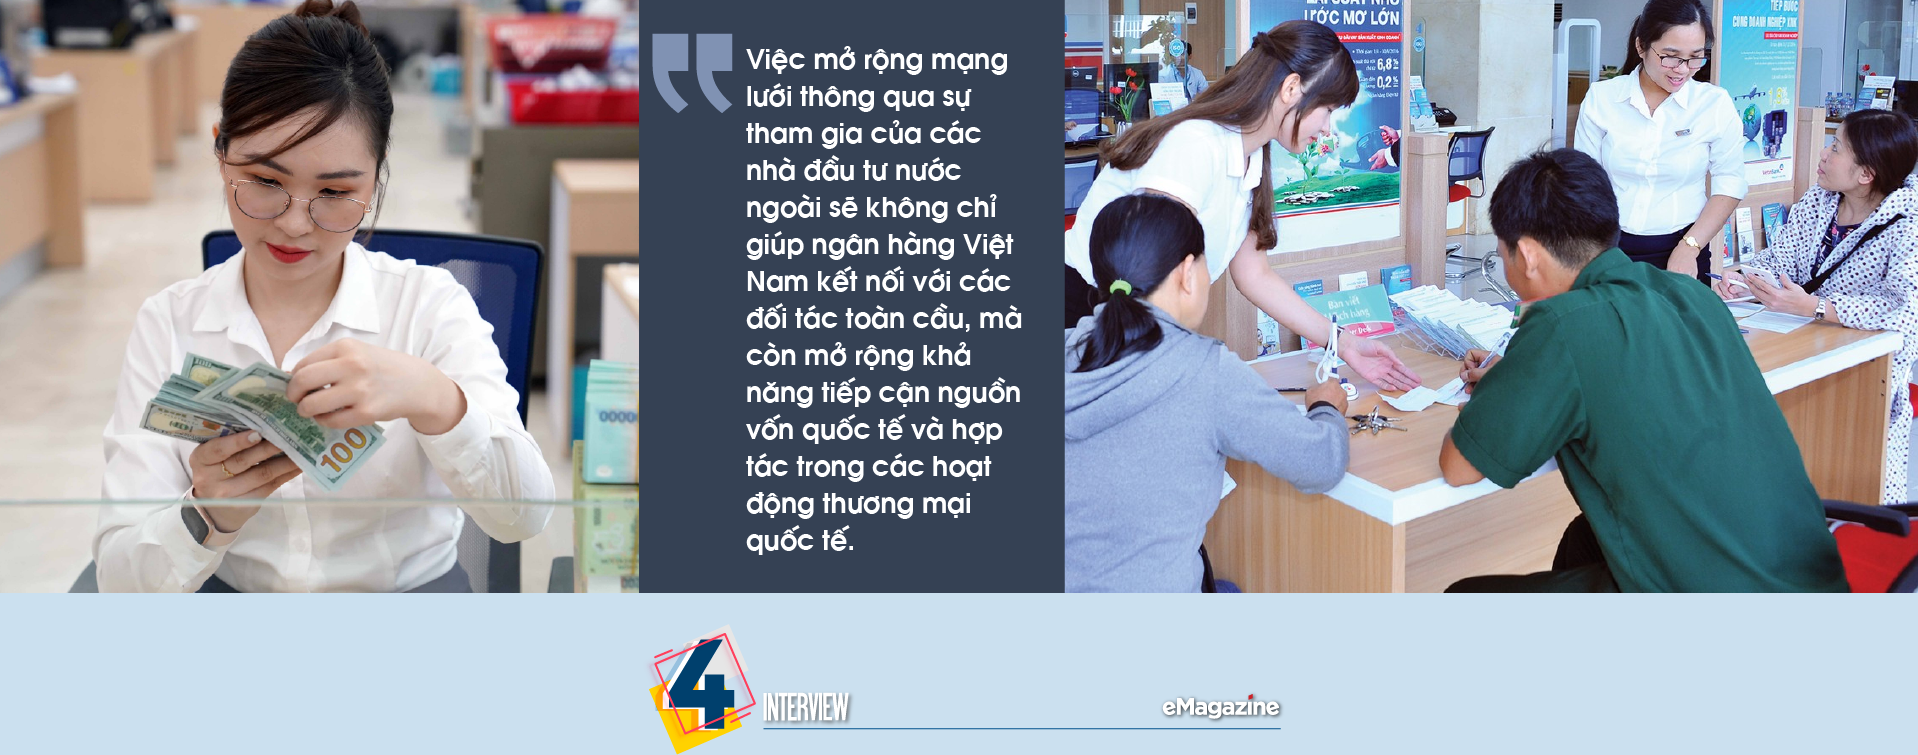 Ngành ngân hàng Việt Nam: Triển vọng thu hút vốn ngoại - Ảnh 5